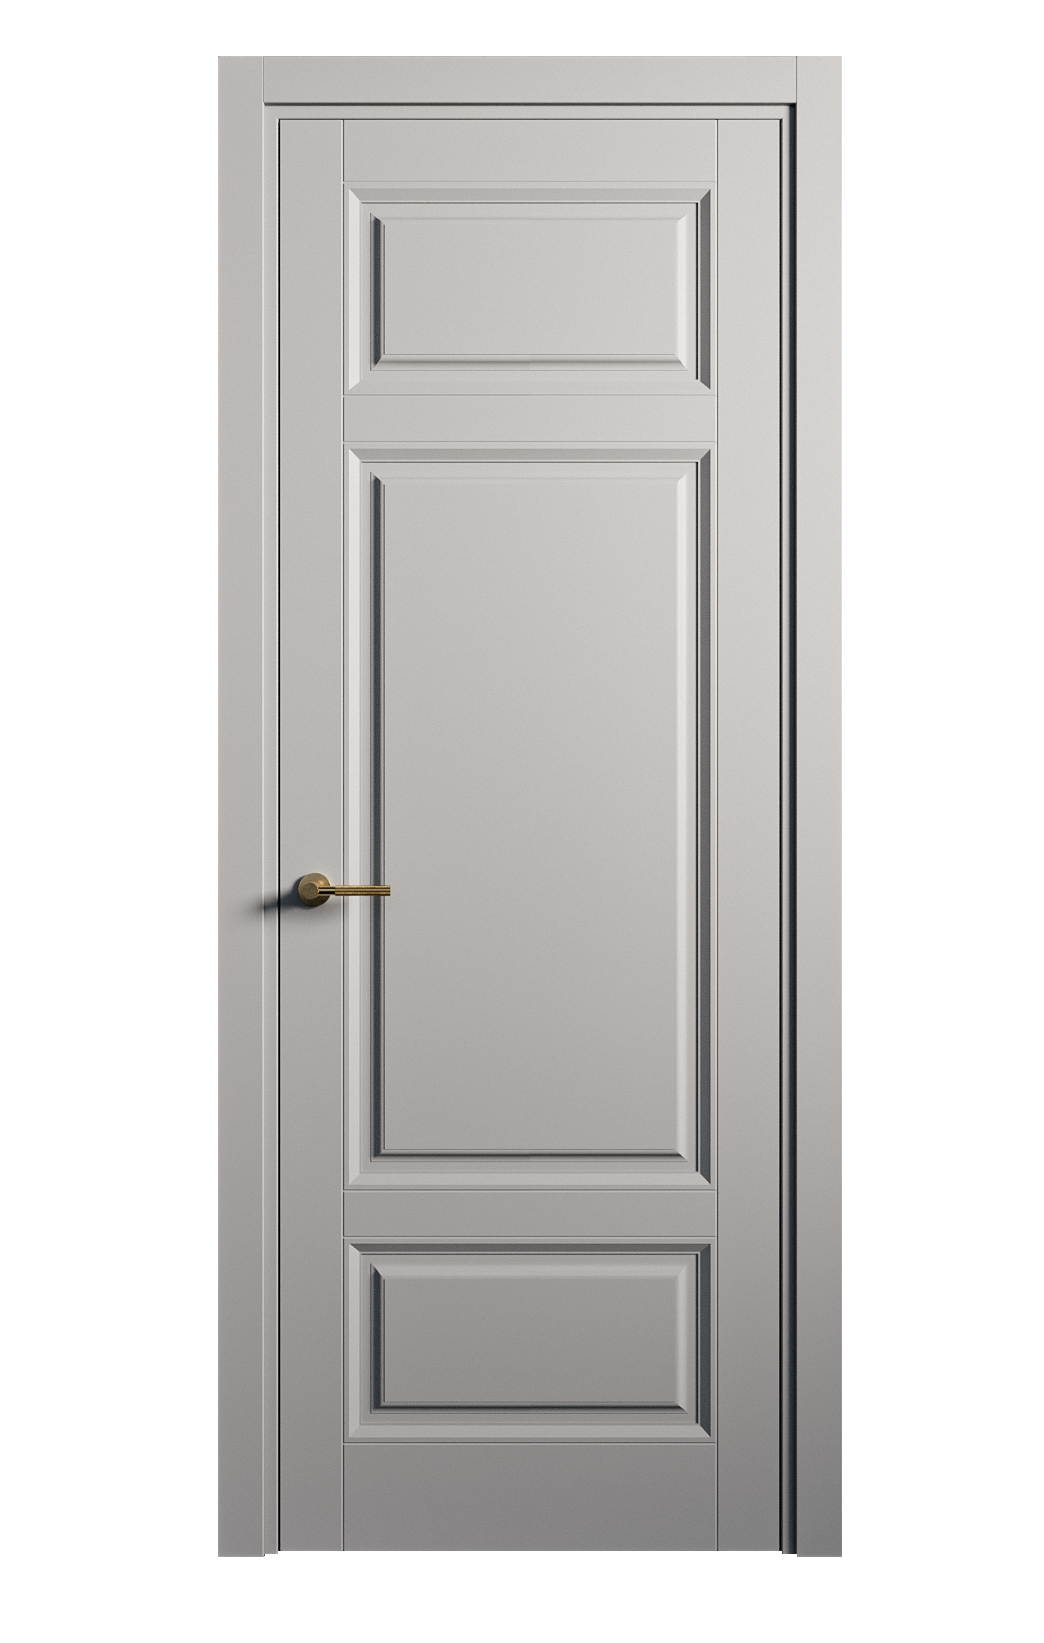 Межкомнатная дверь Venezia-5 глухая эмаль ral 7040 25901